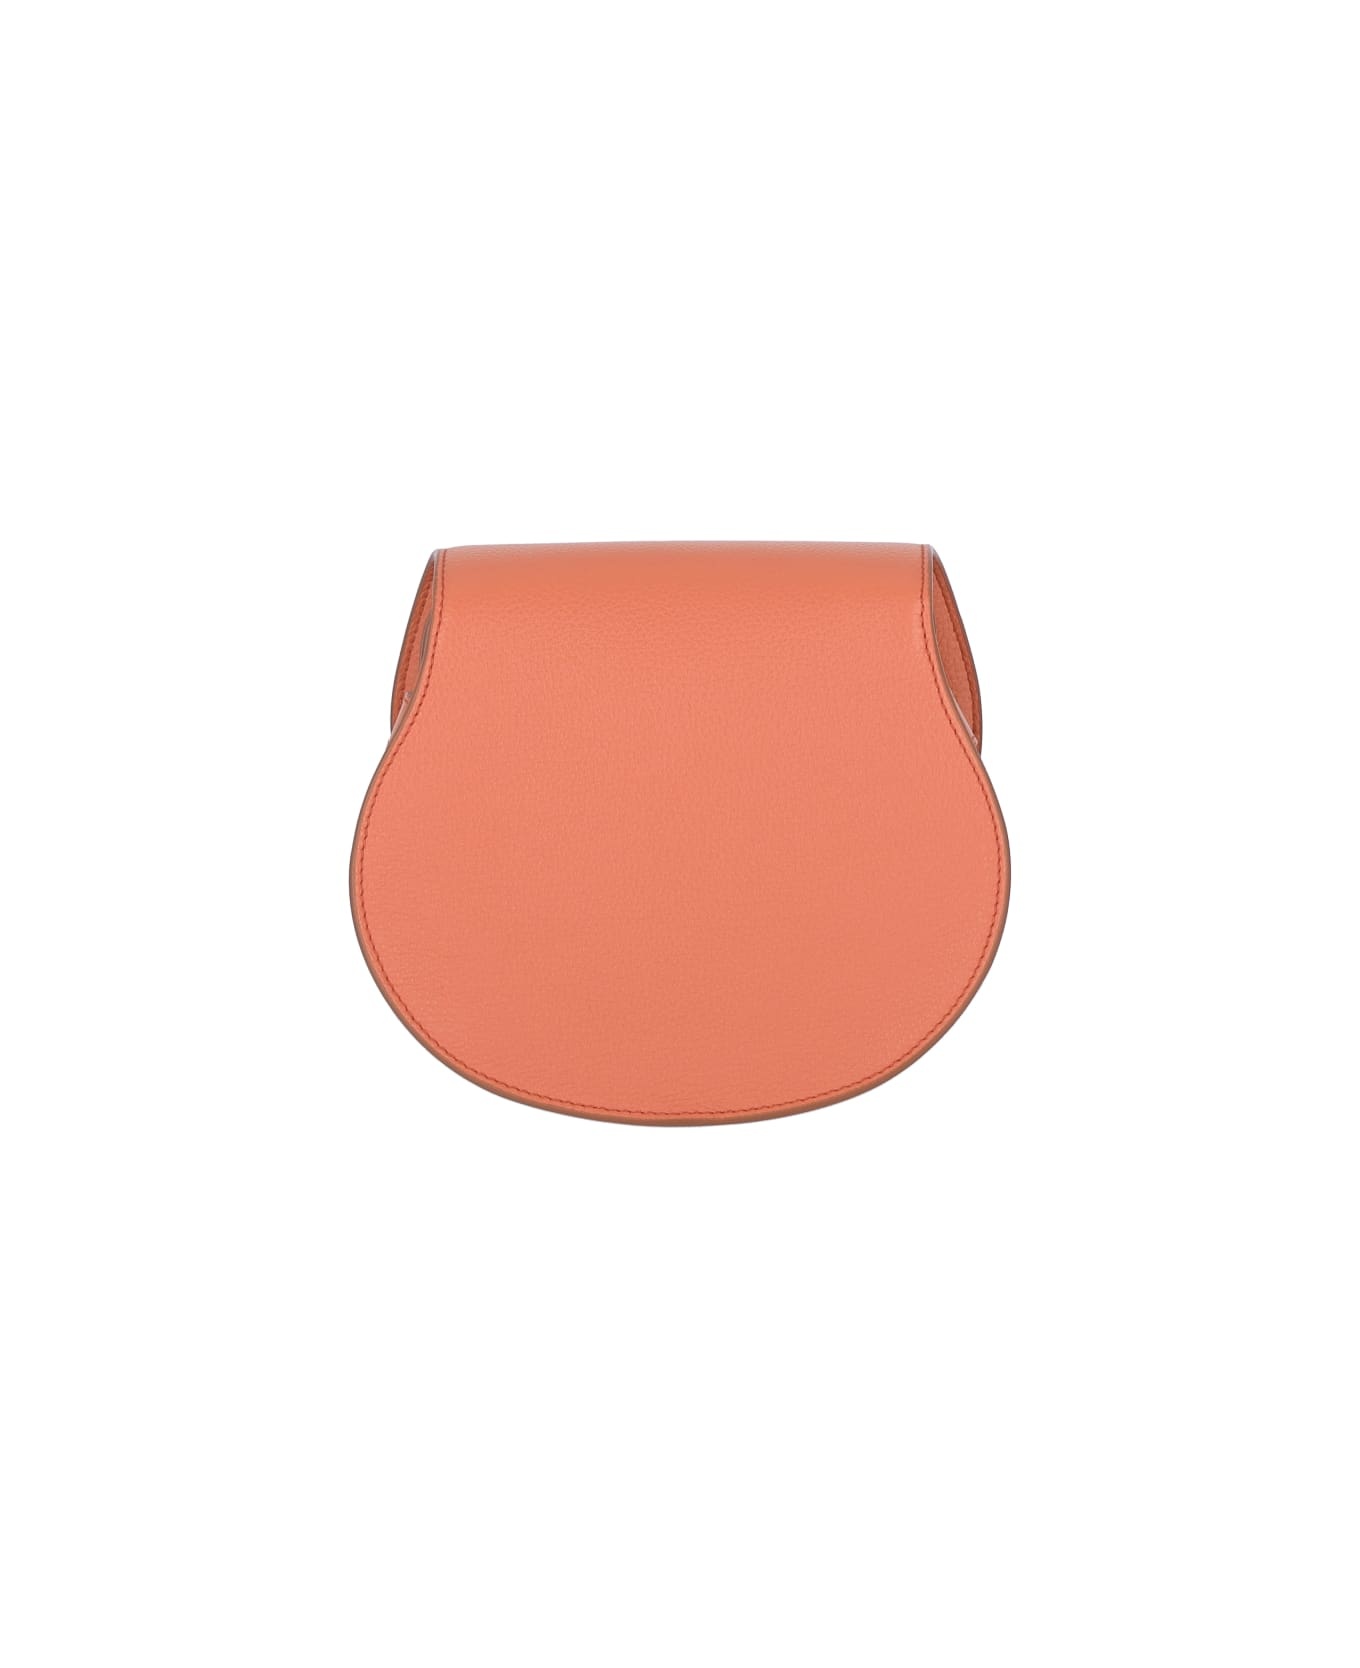 Mercie Shoulder Bag In Orange Leather - 3